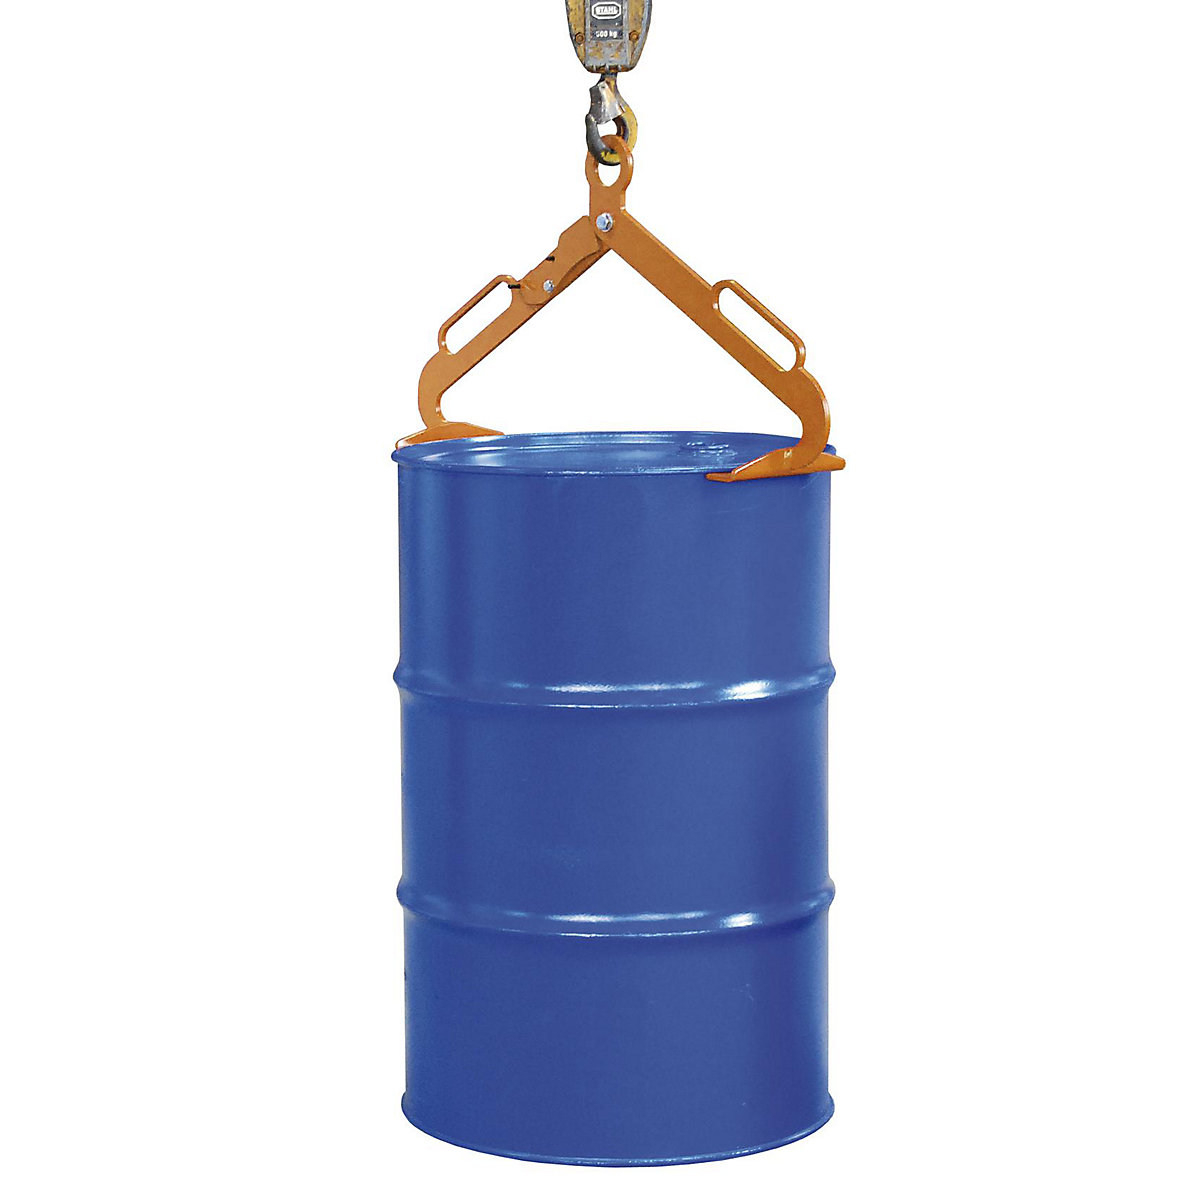 Drum tong – eurokraft pro, for upright 200 l drums, orange-1